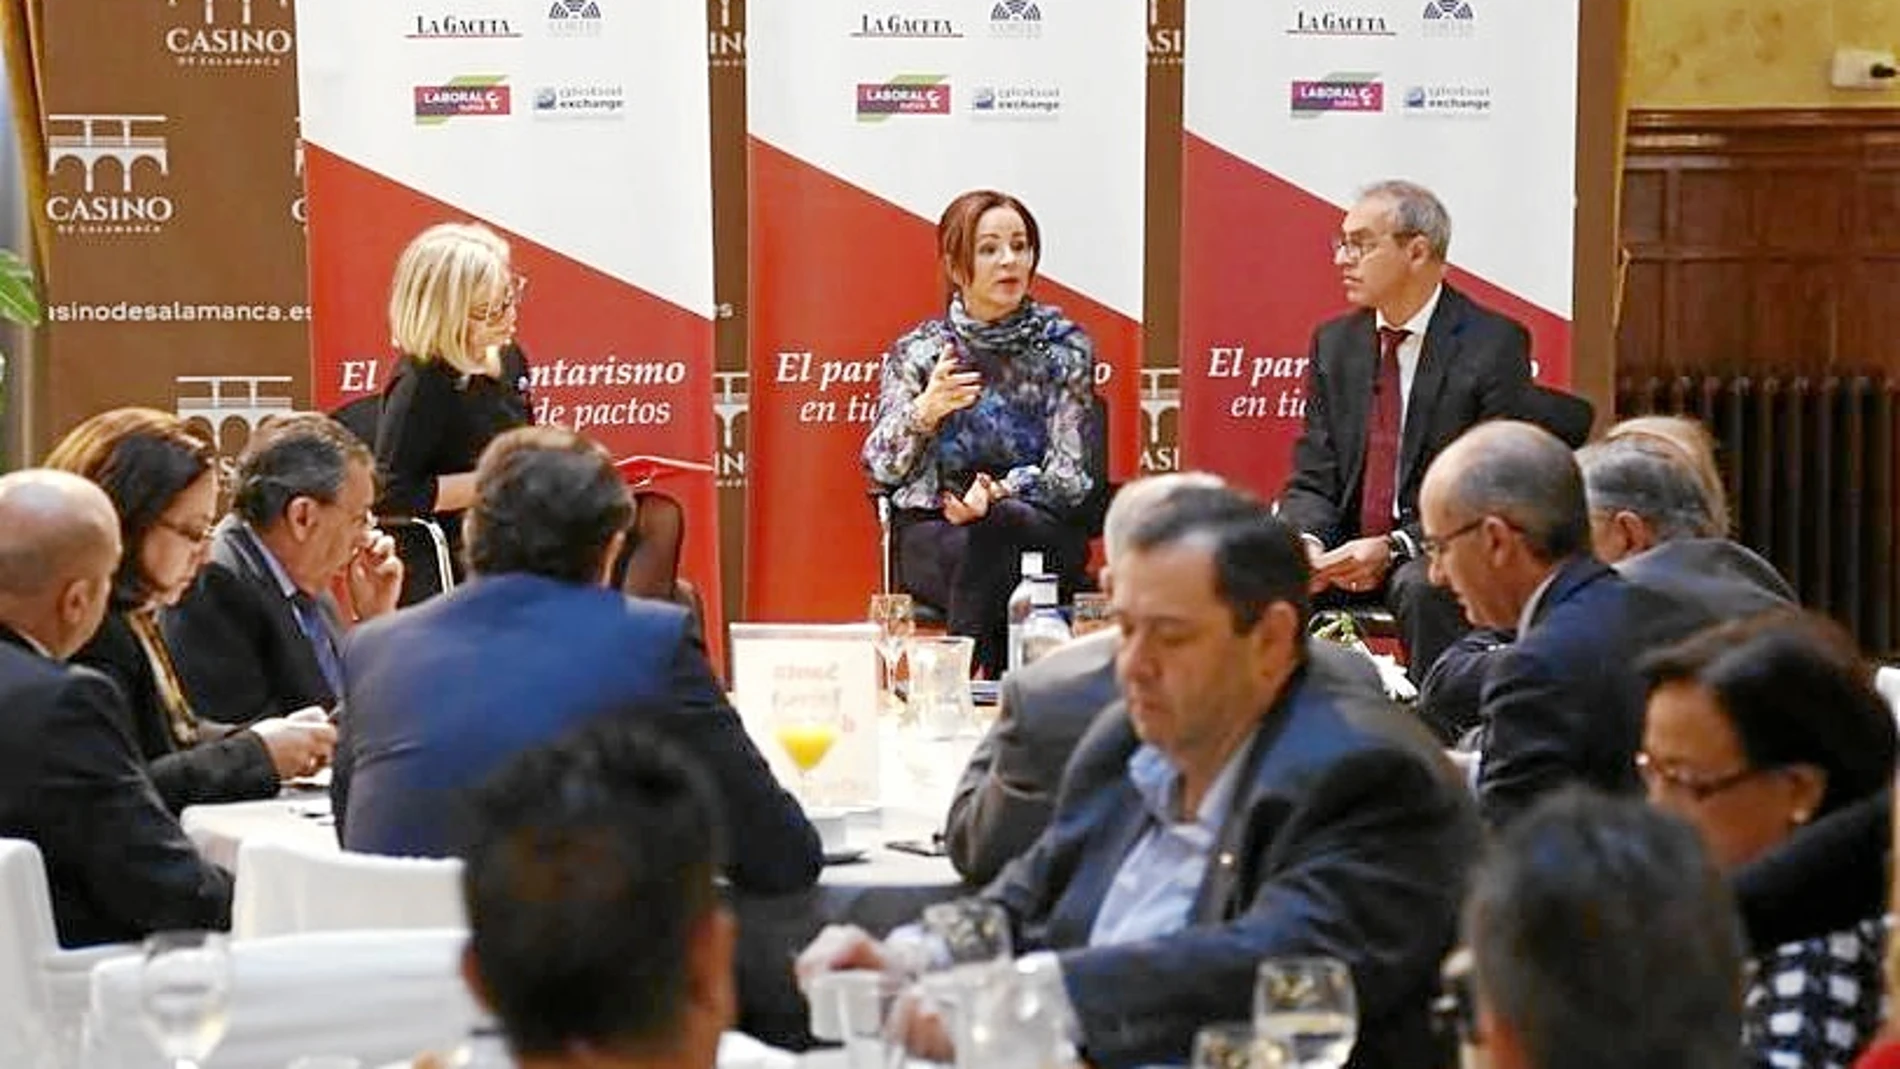 Silvia Clemente interviene en el foro de Salamanca, en presencia, entre otros, del periodista Julián Ballestero.